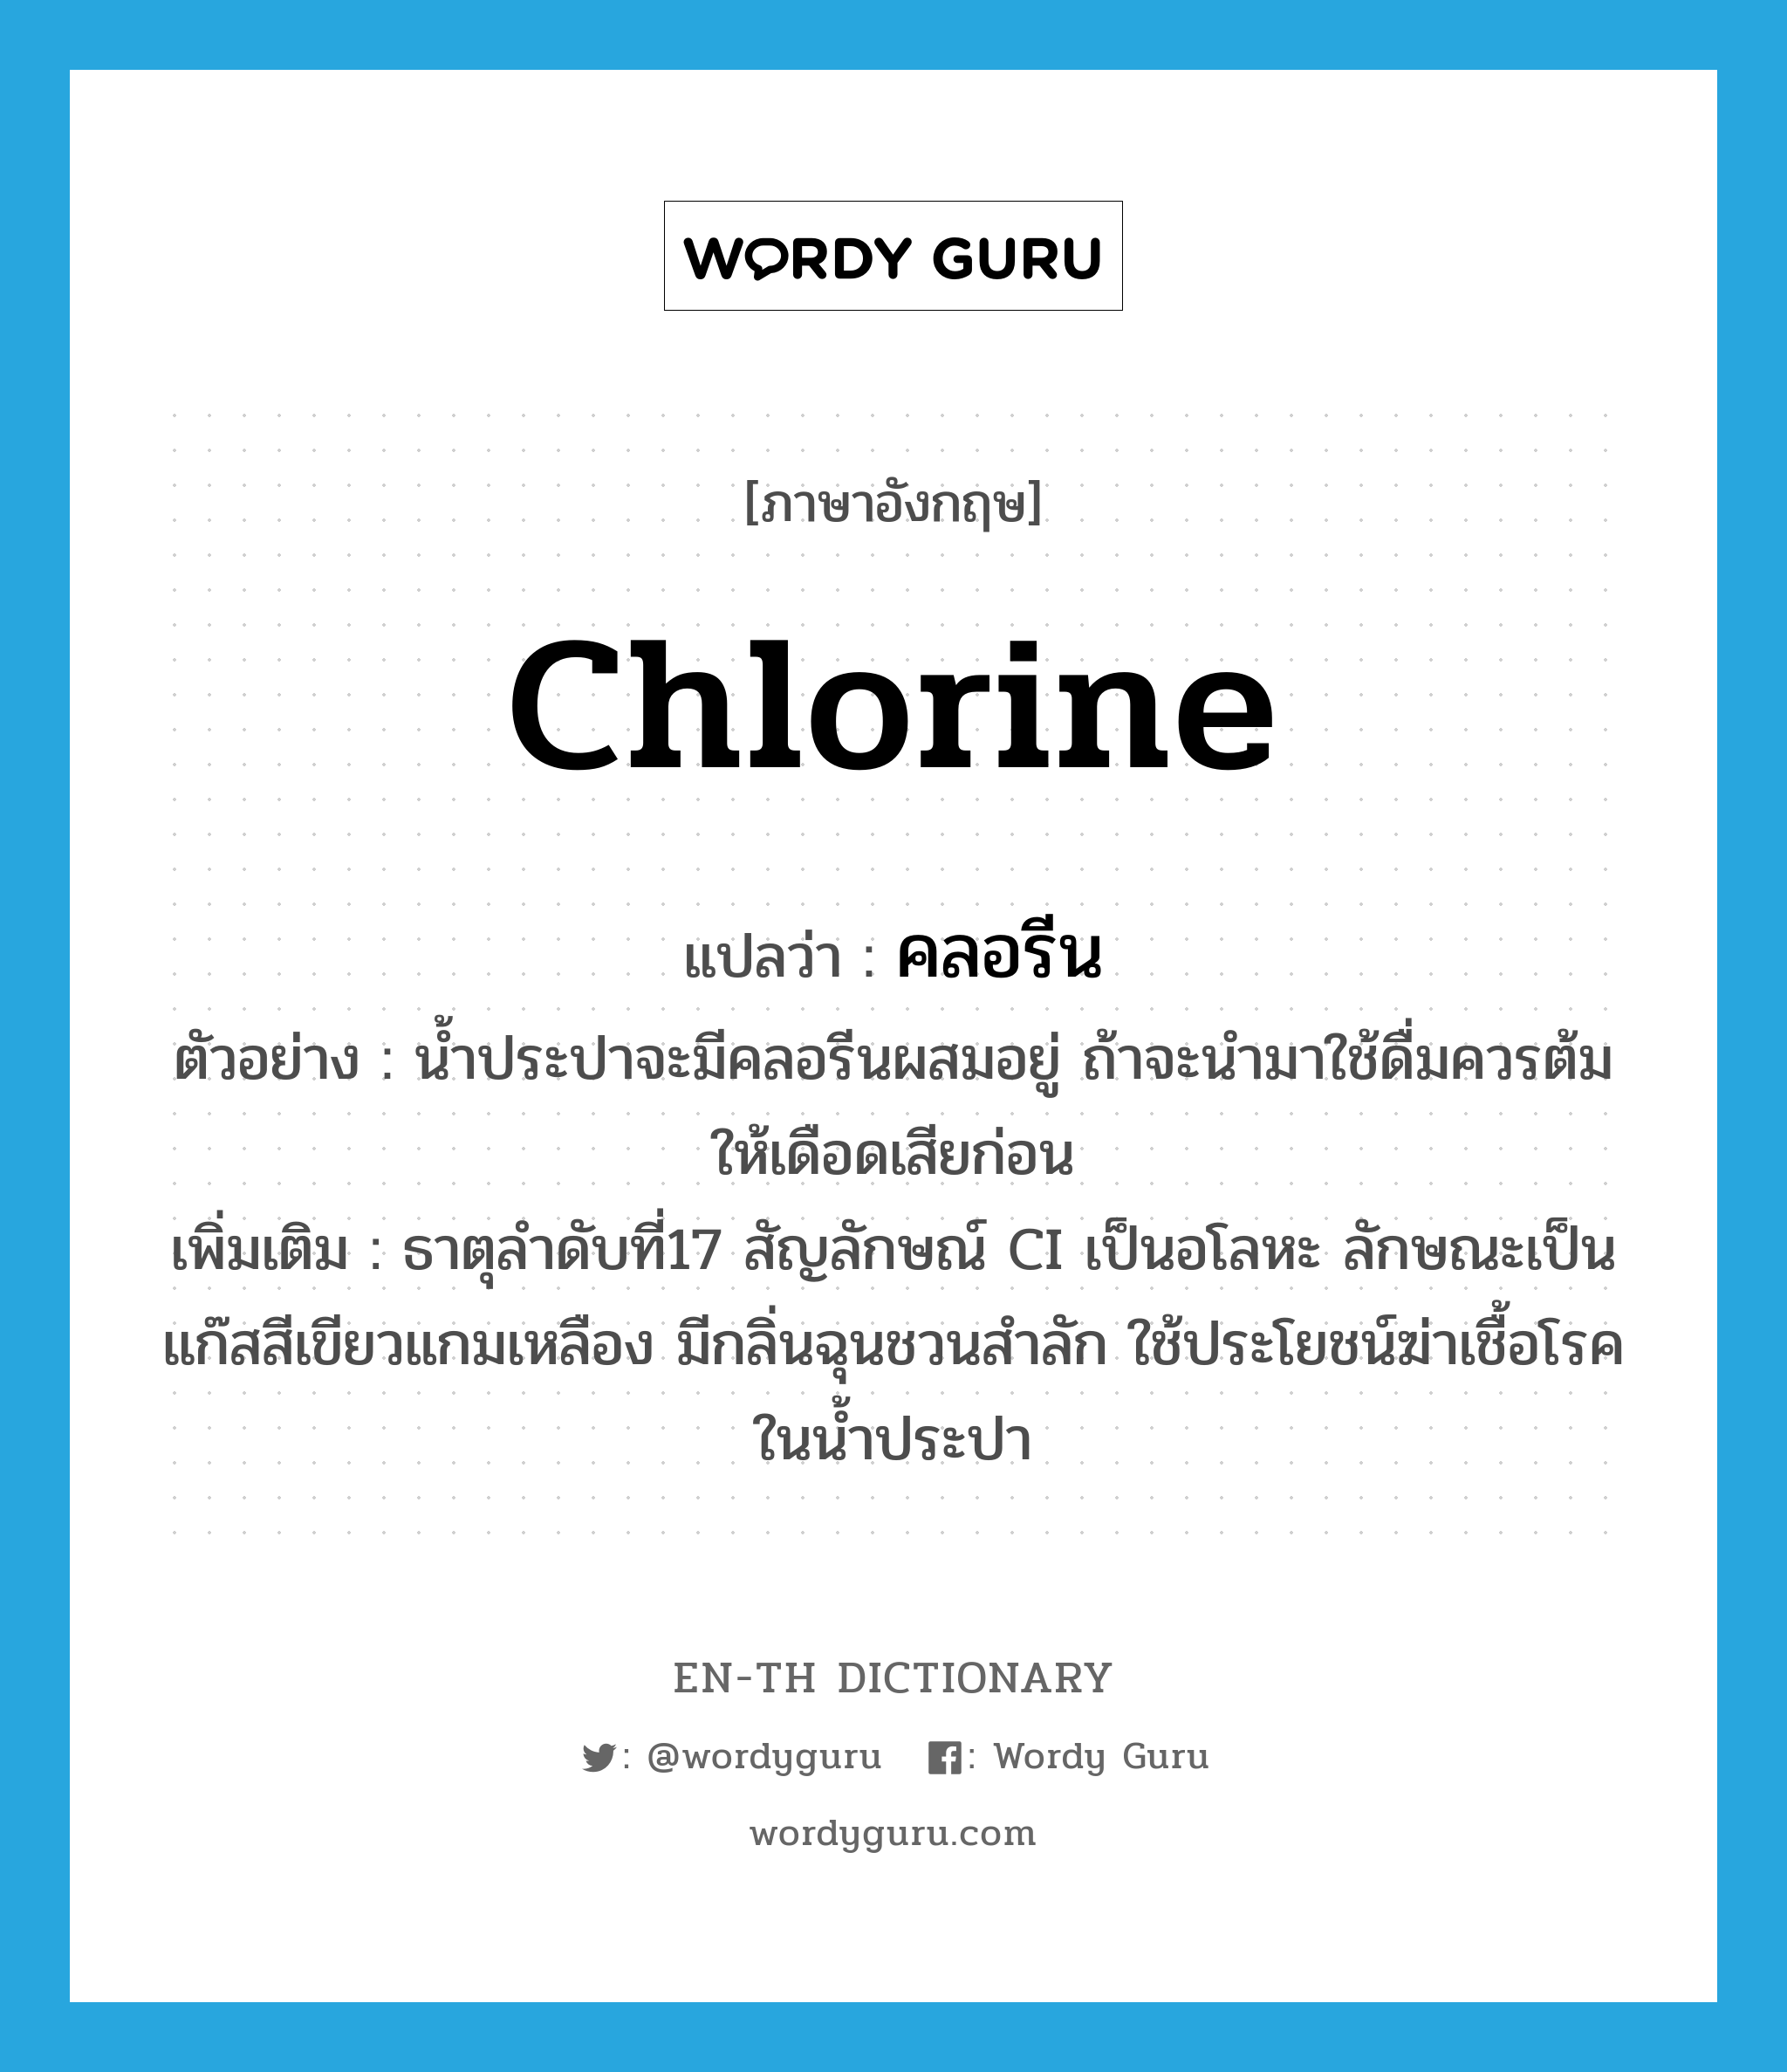 chlorine แปลว่า?, คำศัพท์ภาษาอังกฤษ chlorine แปลว่า คลอรีน ประเภท N ตัวอย่าง น้ำประปาจะมีคลอรีนผสมอยู่ ถ้าจะนำมาใช้ดื่มควรต้มให้เดือดเสียก่อน เพิ่มเติม ธาตุลำดับที่17 สัญลักษณ์ CI เป็นอโลหะ ลักษณะเป็นแก๊สสีเขียวแกมเหลือง มีกลิ่นฉุนชวนสำลัก ใช้ประโยชน์ฆ่าเชื้อโรคในน้ำประปา หมวด N